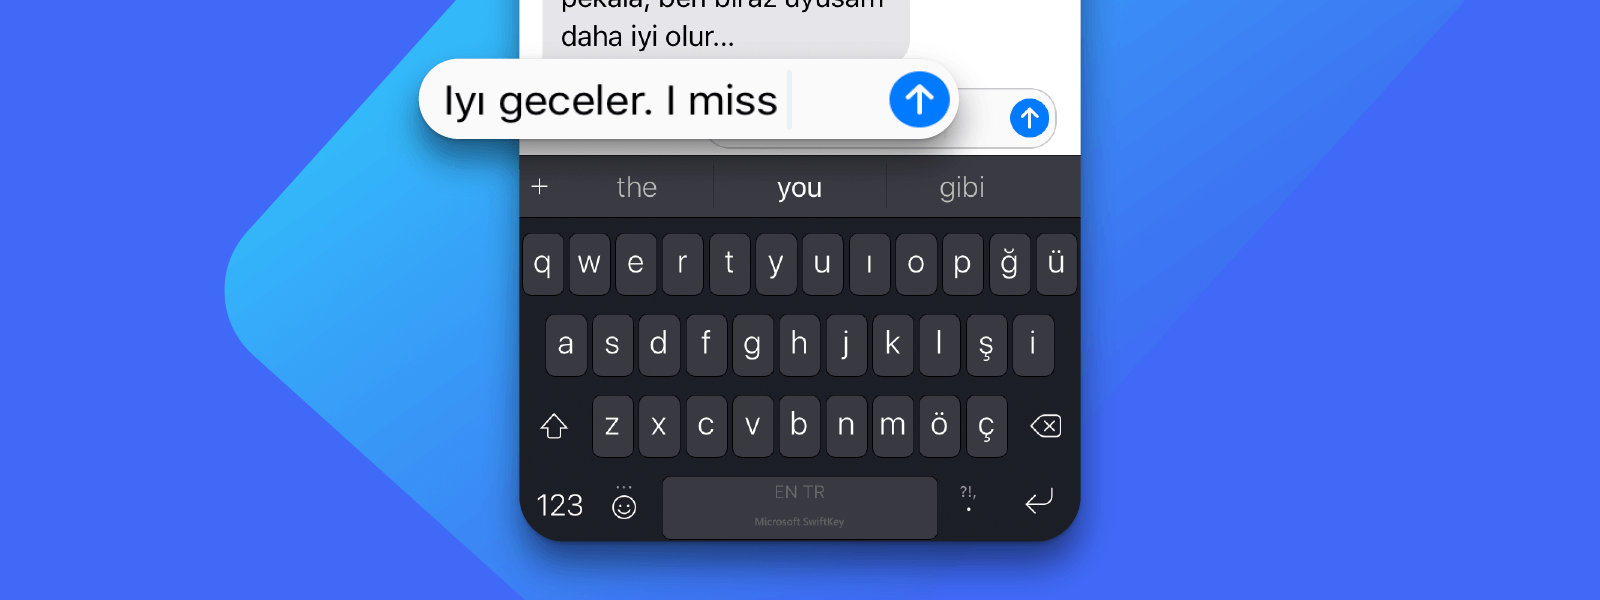 Çeşitli dillerde yazmak için SwiftKey kullanan iPhone